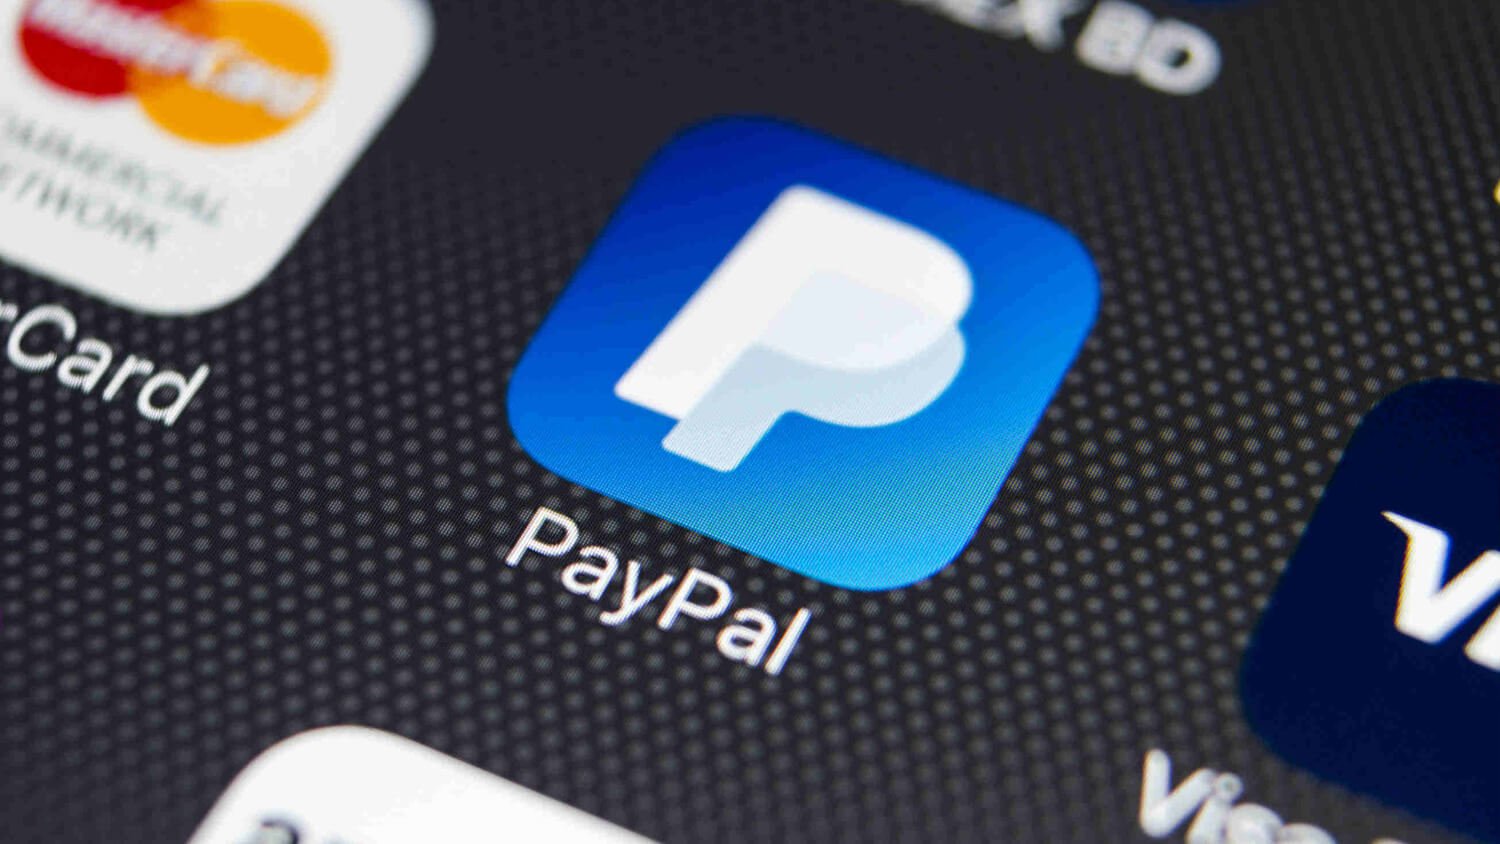 Представители PayPal рассказали, как внедрение криптовалют повлияло на пользователей платформы. Логотип PayPal. Фото.